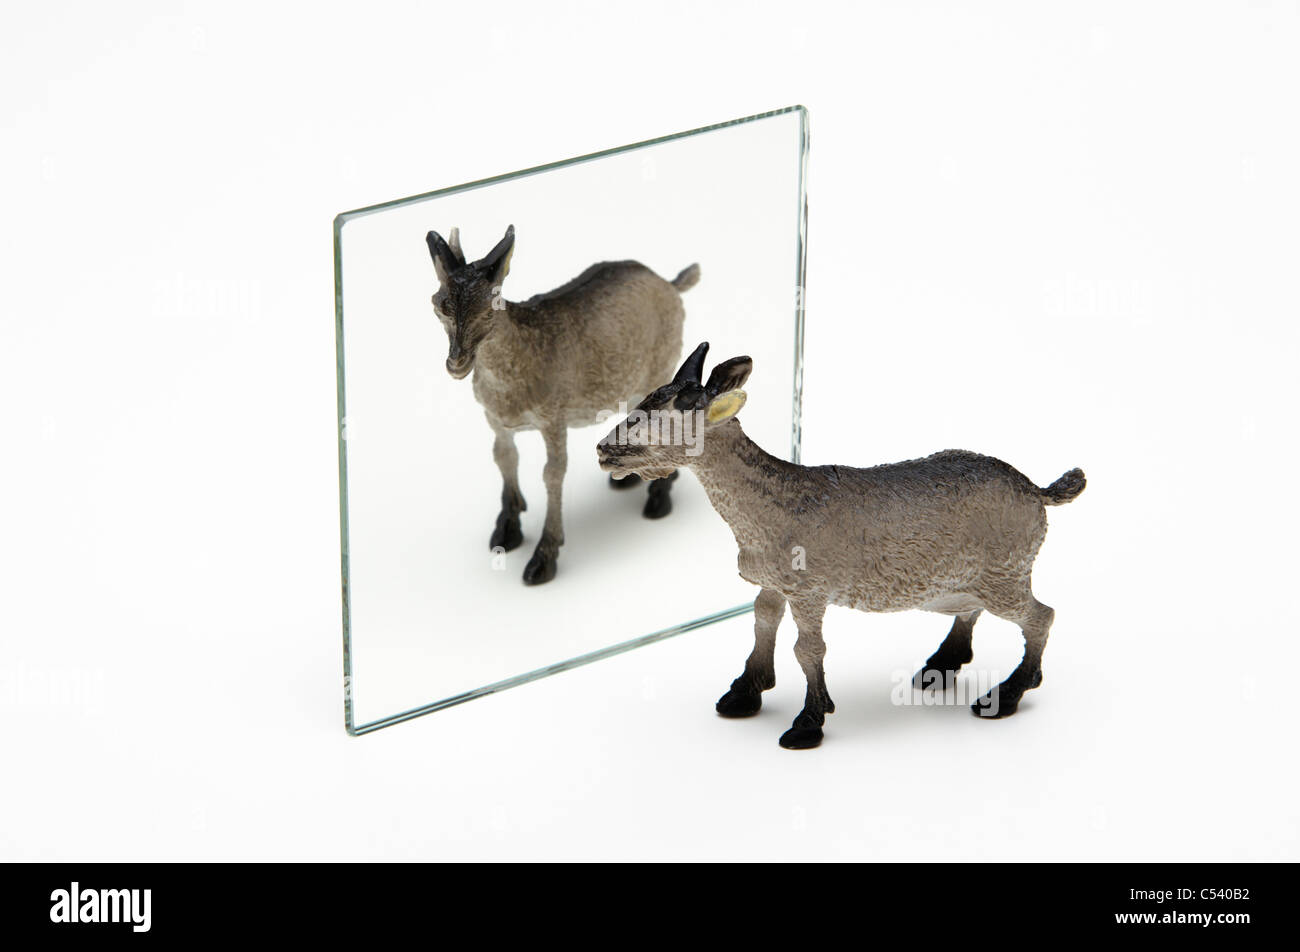 La réflexion de miroir. Une chèvre toy reflétée dans un miroir plan. Banque D'Images